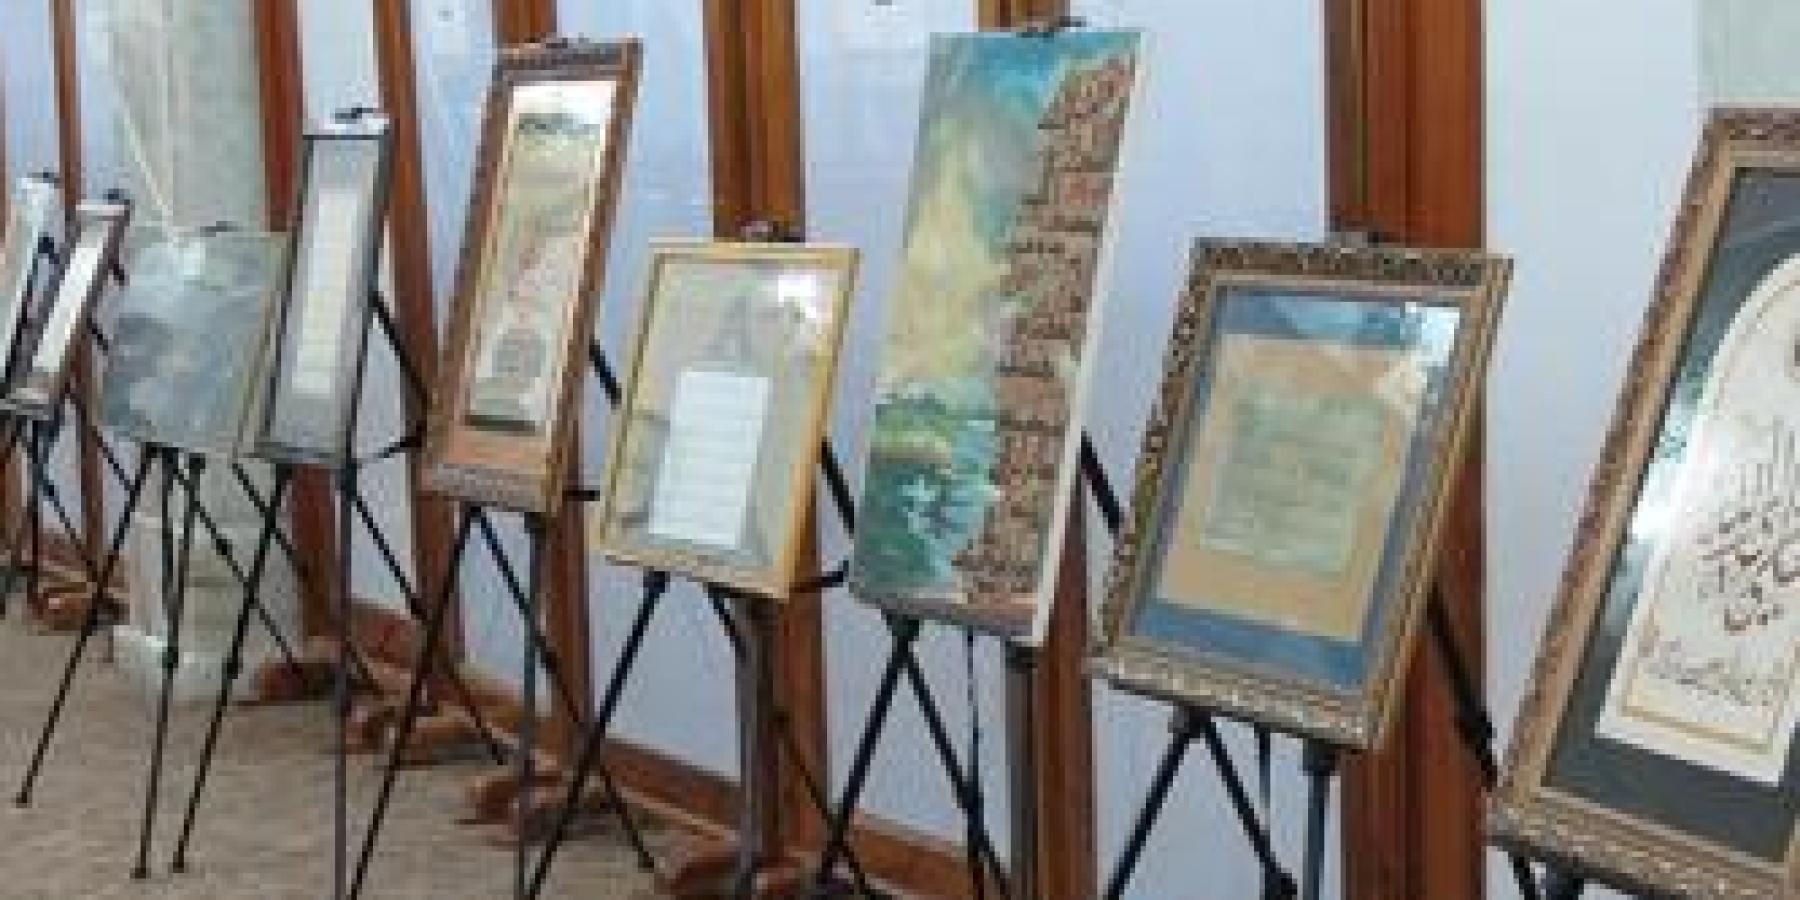 على هامش مهرجان الغدير العالمي الاول افتتاح معرض الخط العربي في الصحن الحيدري الشريف